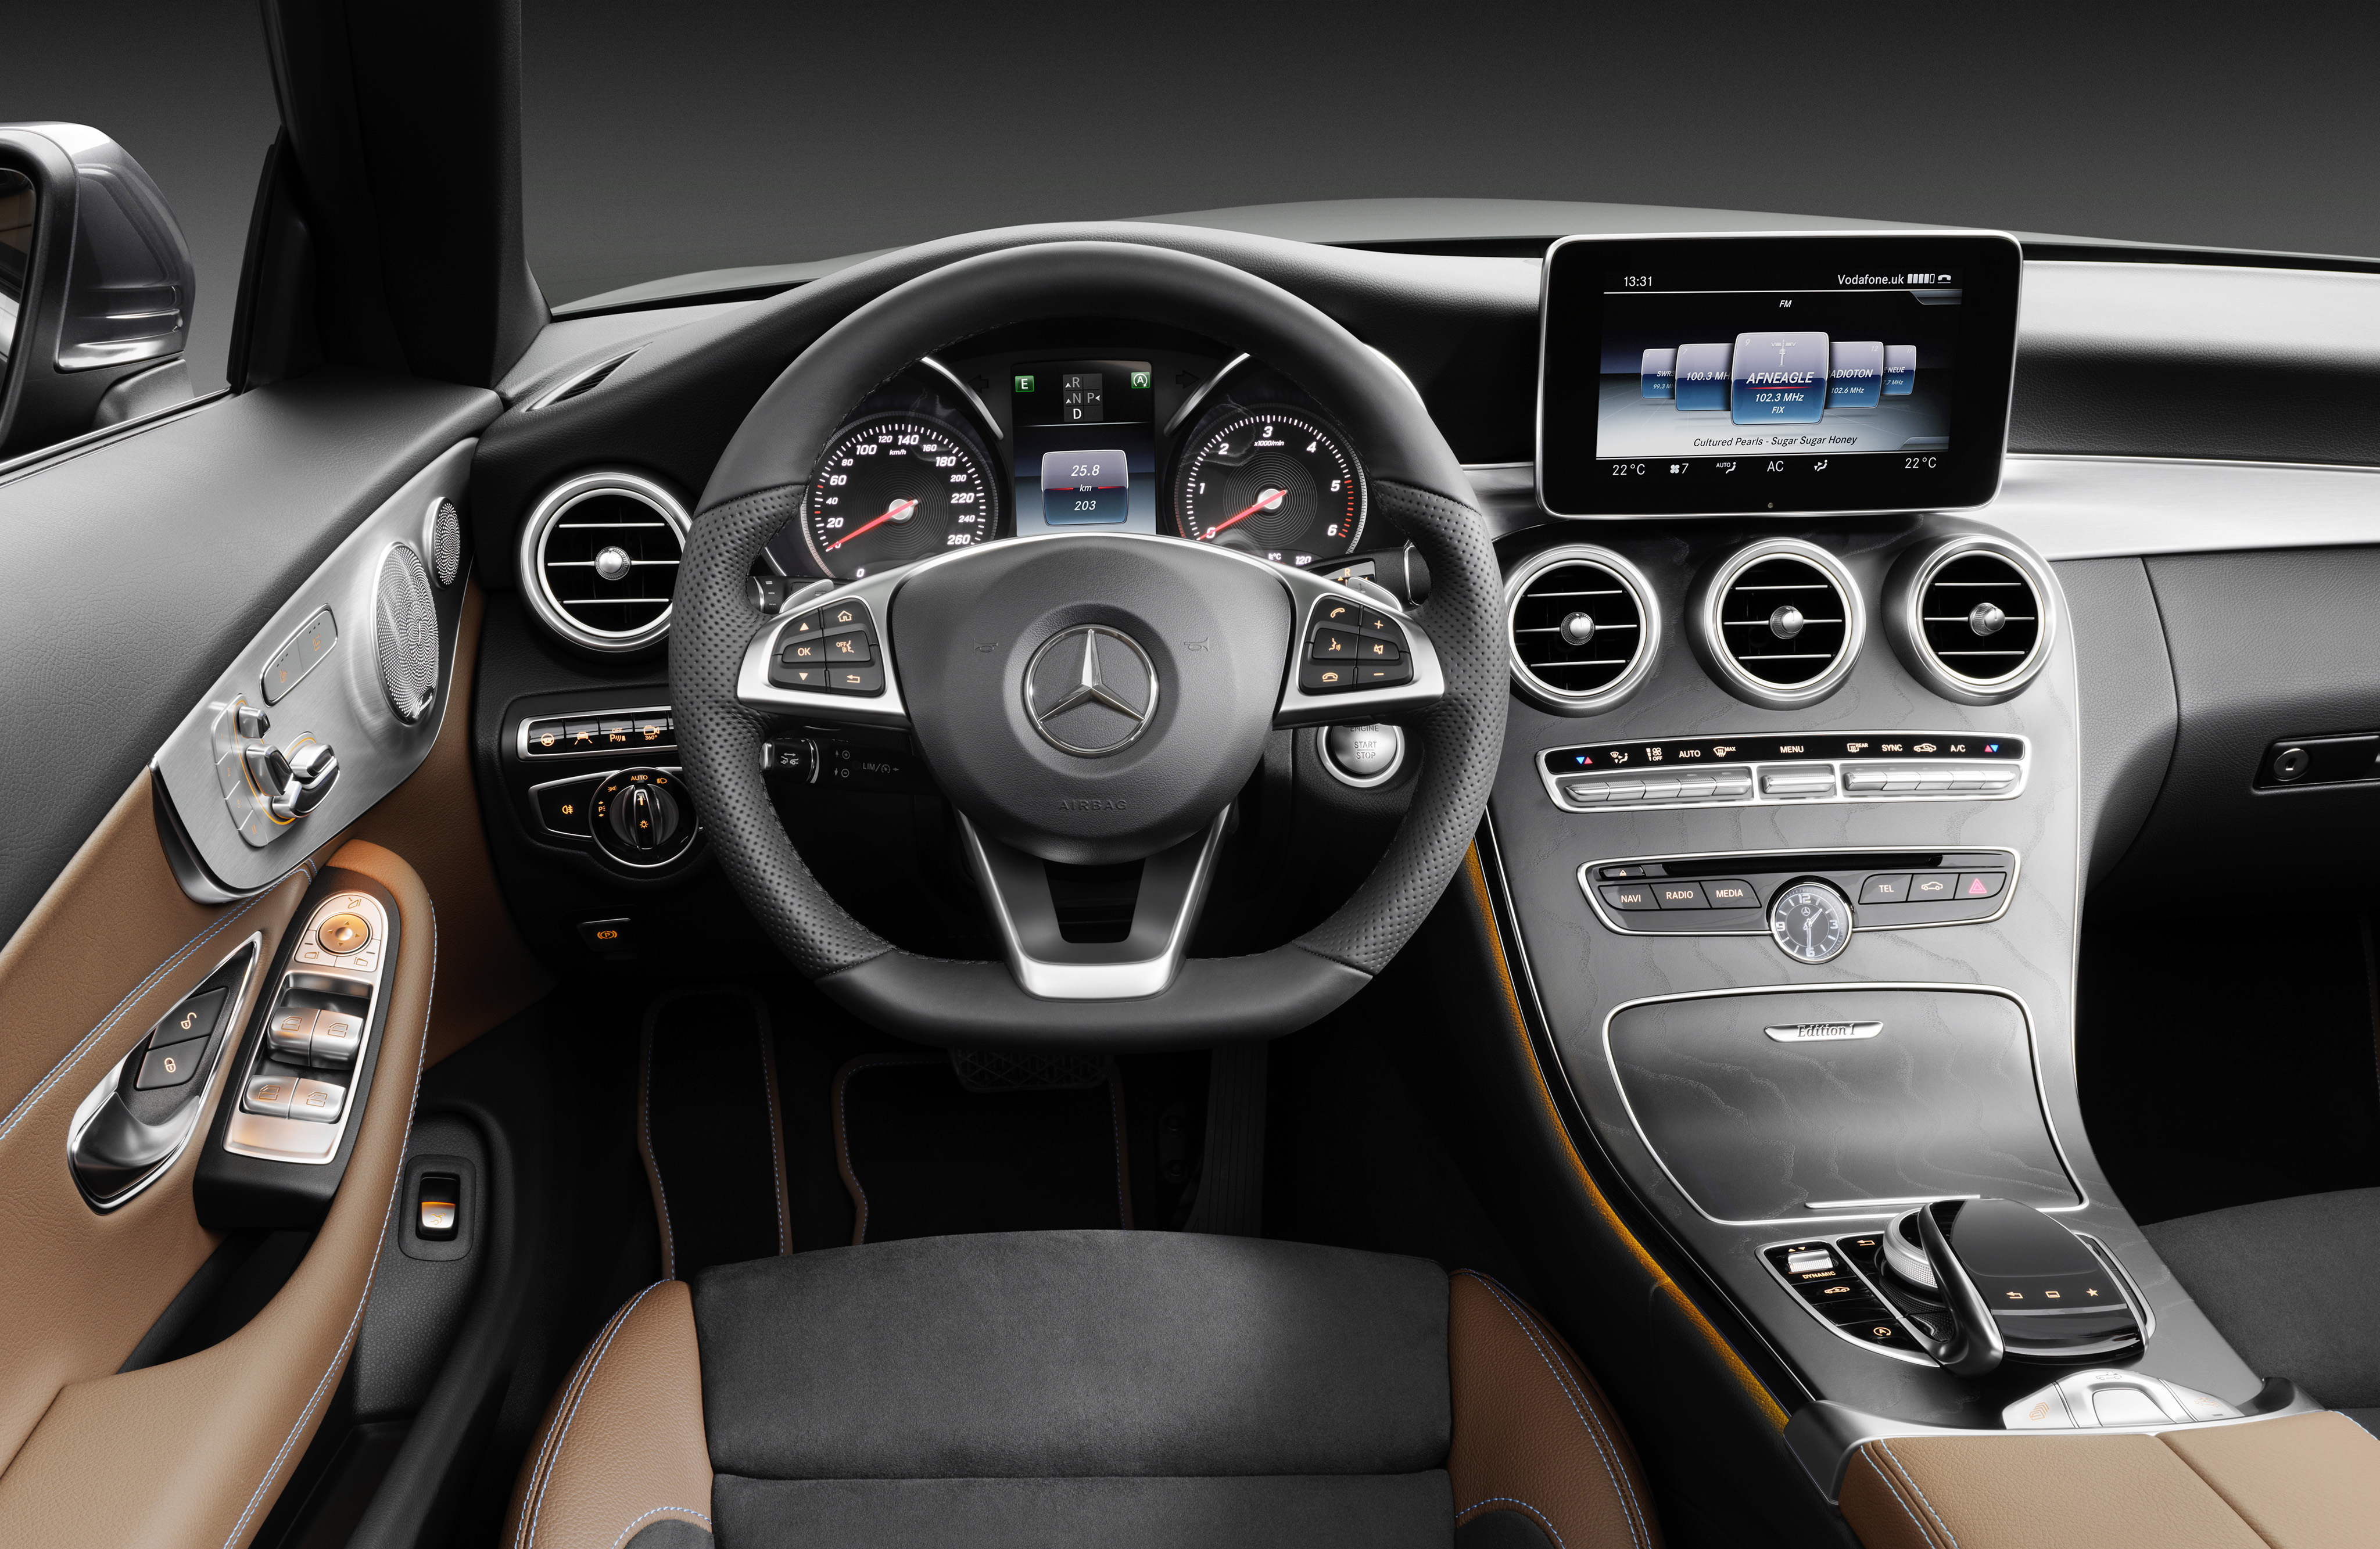 Mercedes-Benz C-Class Cabriolet: Beyond Beauty